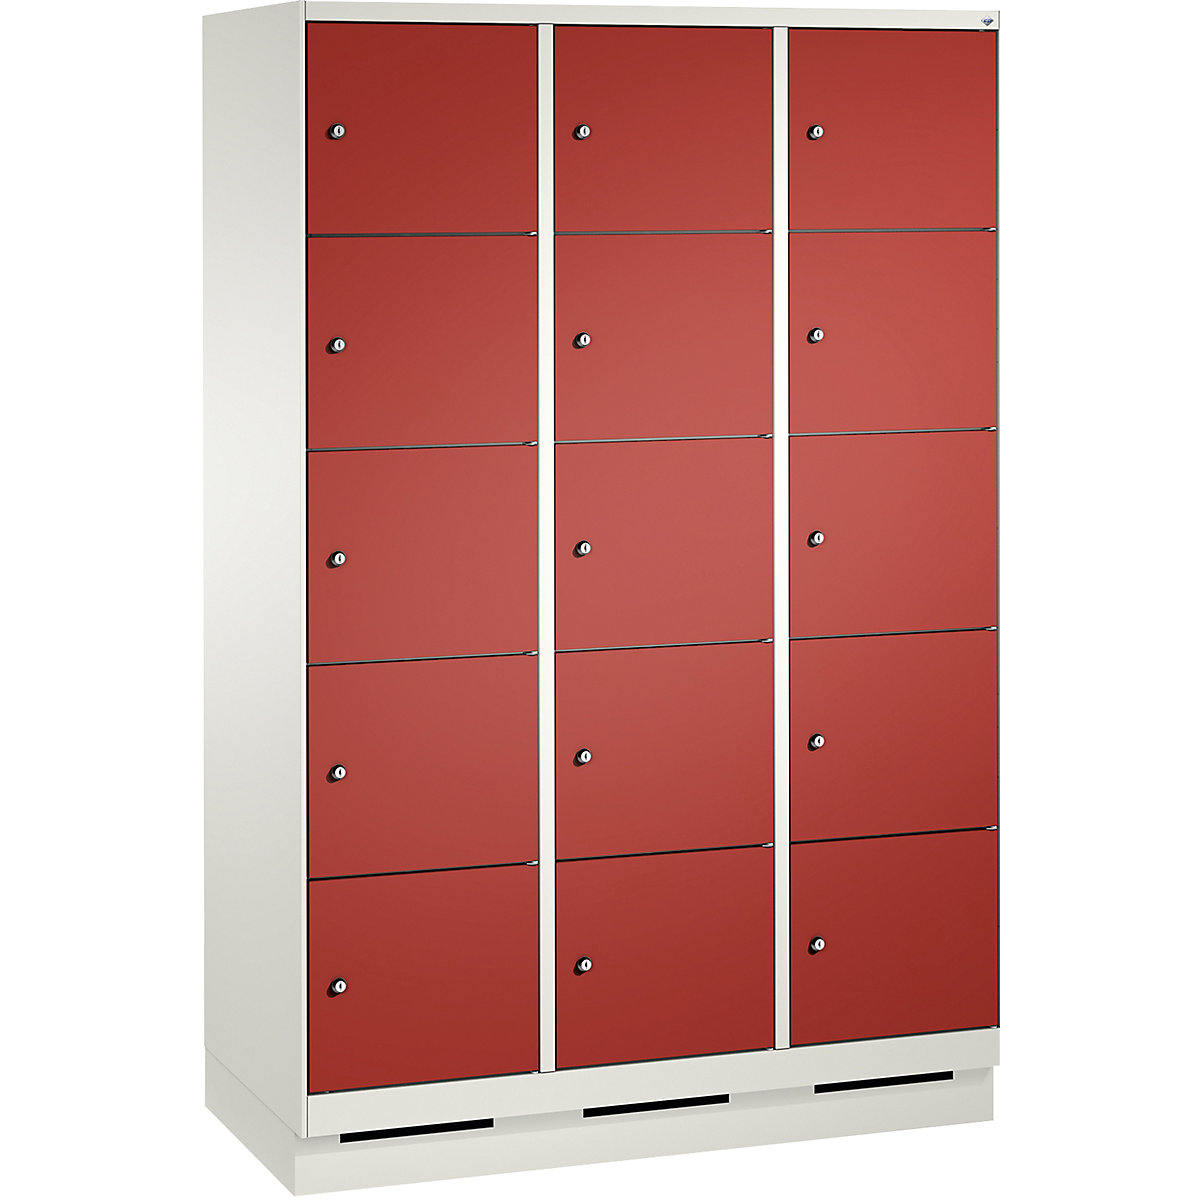 Armoire à casiers sur socle EVOLO – C+P, 3 compartiments, 5 casiers chacun, largeur compartiments 400 mm, blanc trafic / rouge feu-7